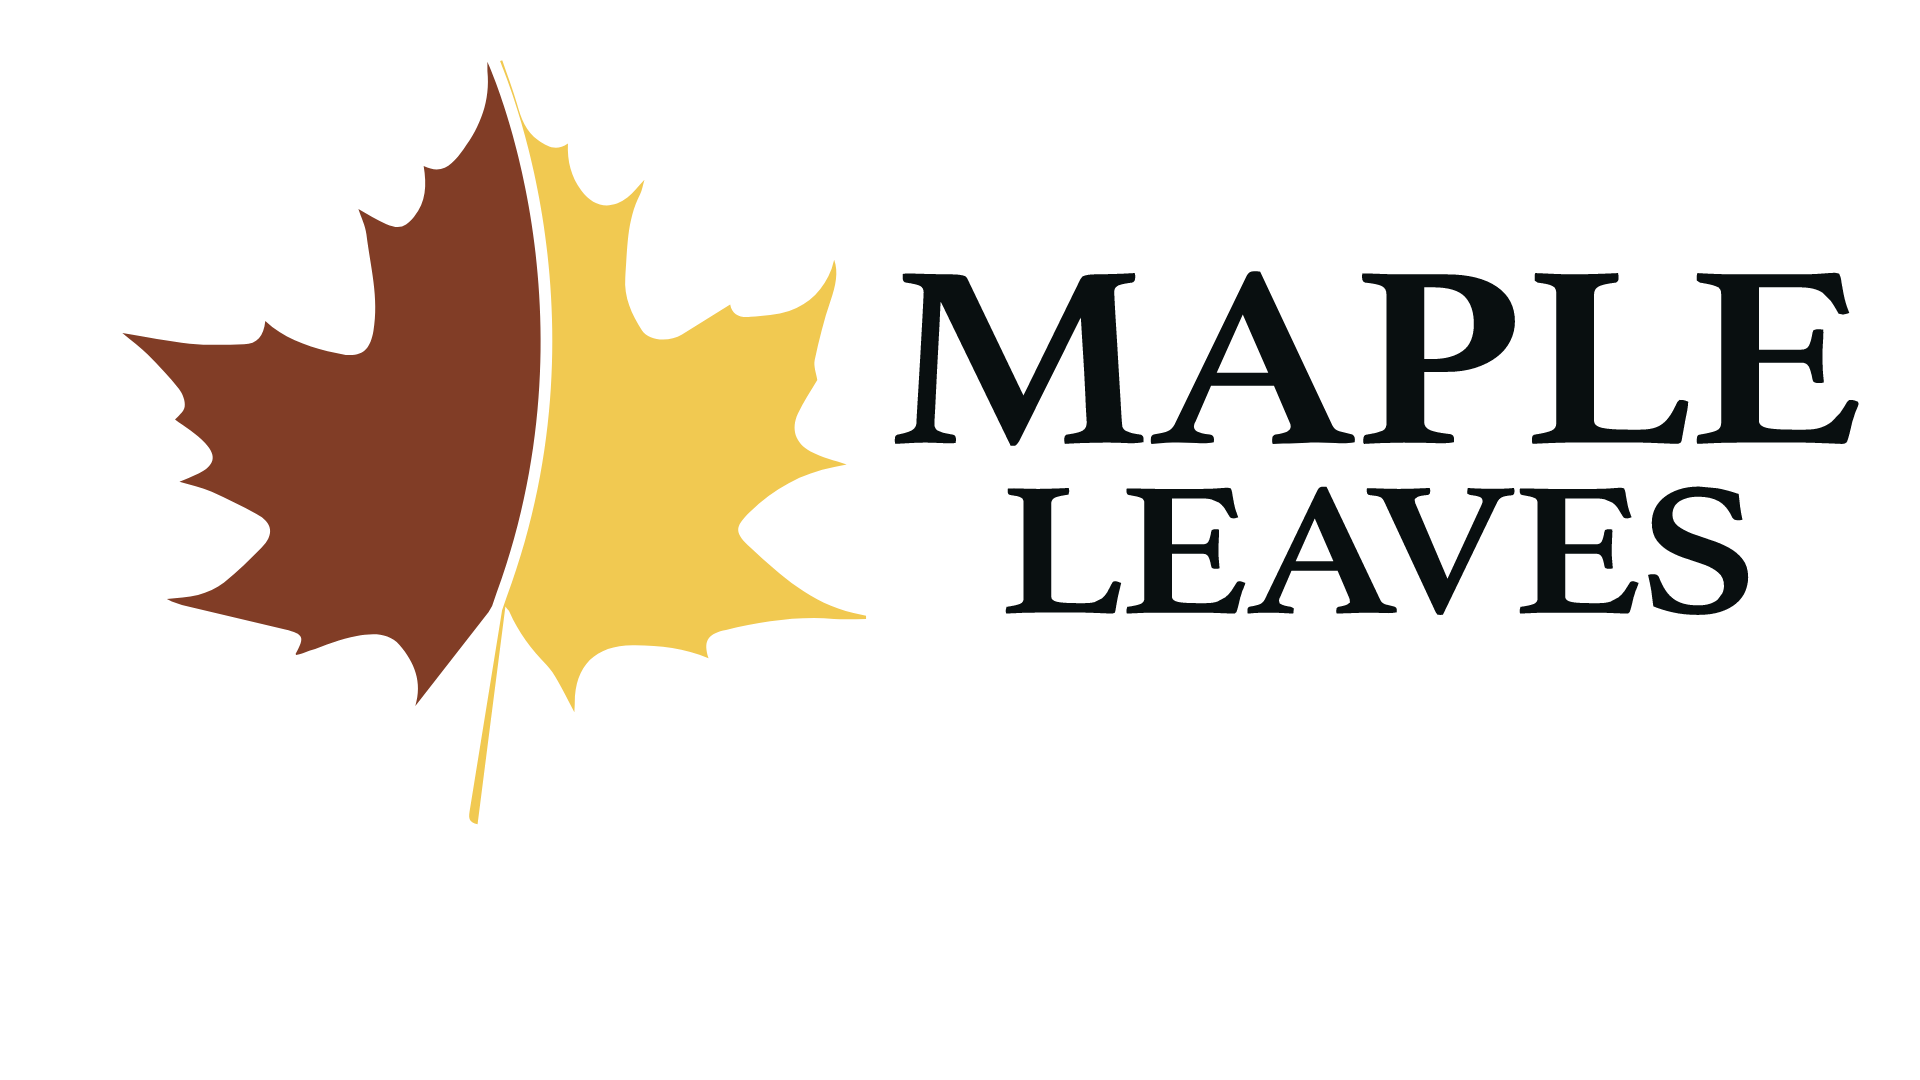 MapleLeaves